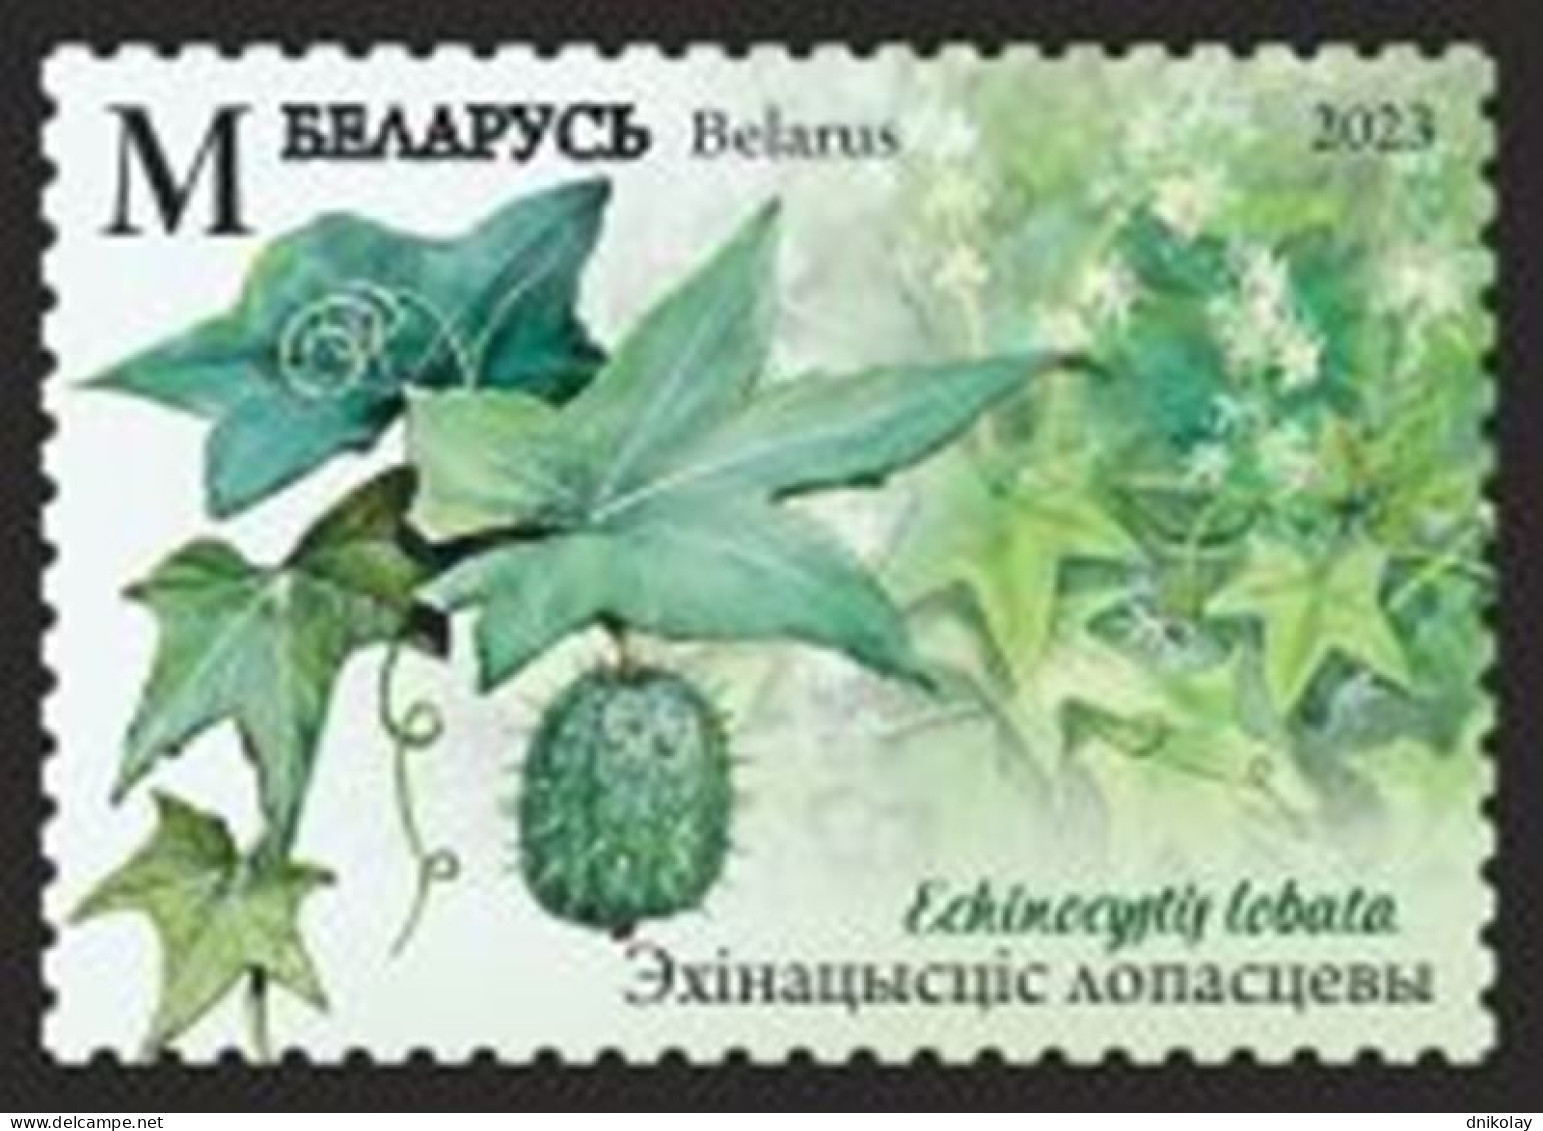 2023 1516 Belarus Invasive Species Of Flora And Fauna Of Belarus MNH - Belarus